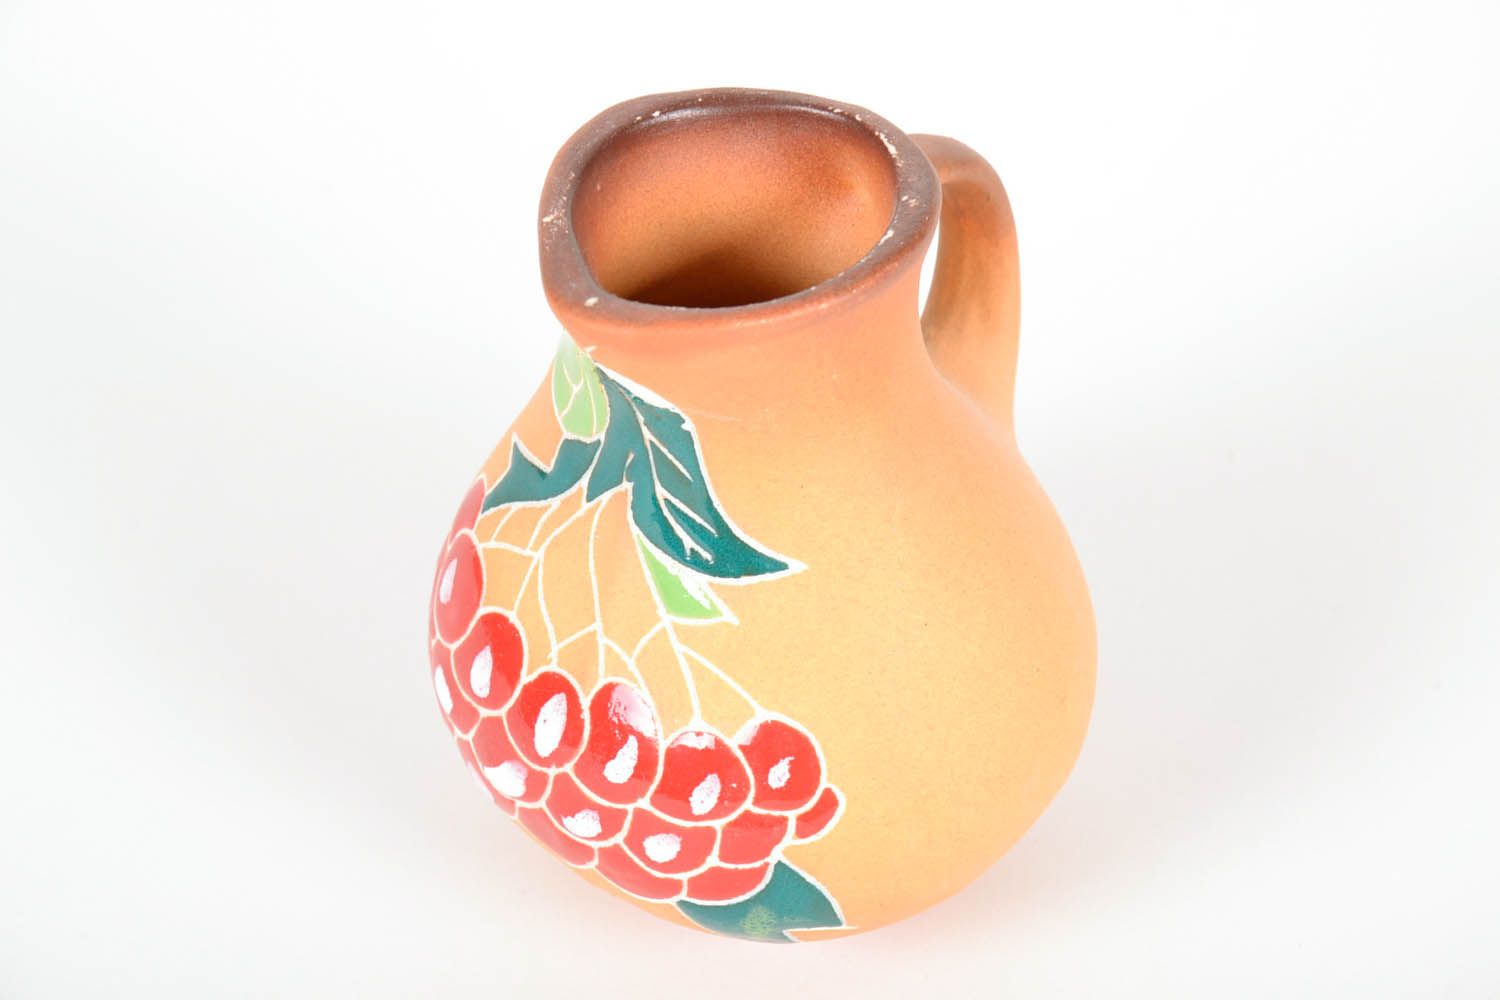 25 oz handmade ceramic water or mil or juice pitcher jug in beige color floral design 0,56 lb photo 3